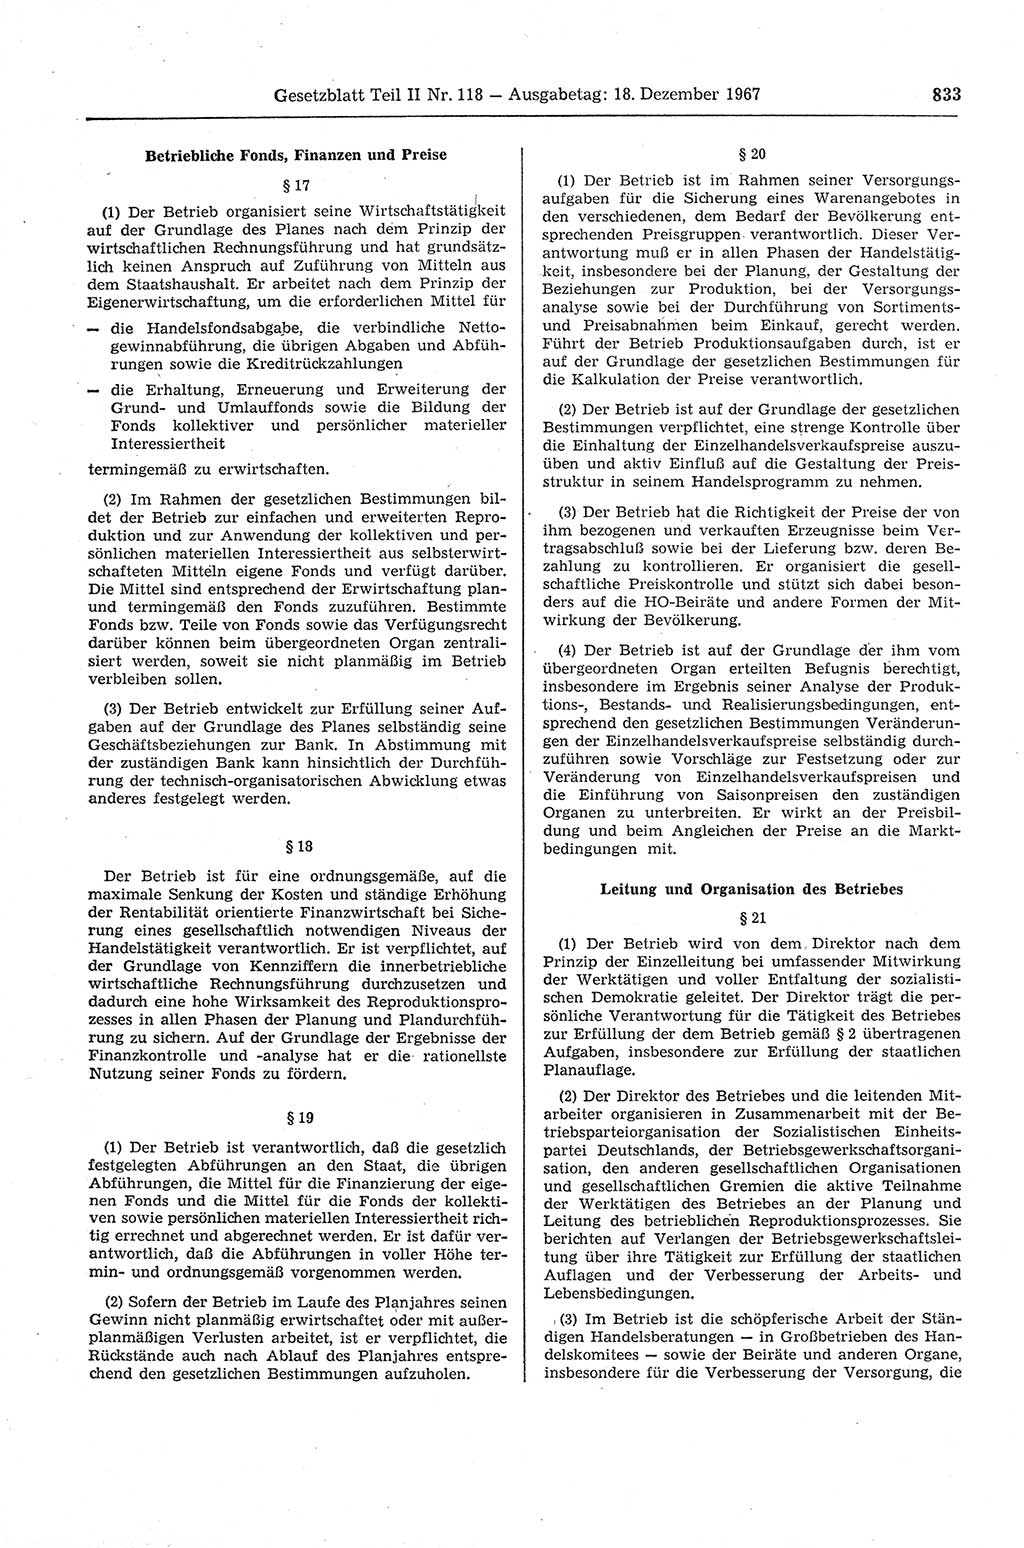 Gesetzblatt (GBl.) der Deutschen Demokratischen Republik (DDR) Teil ⅠⅠ 1967, Seite 833 (GBl. DDR ⅠⅠ 1967, S. 833)